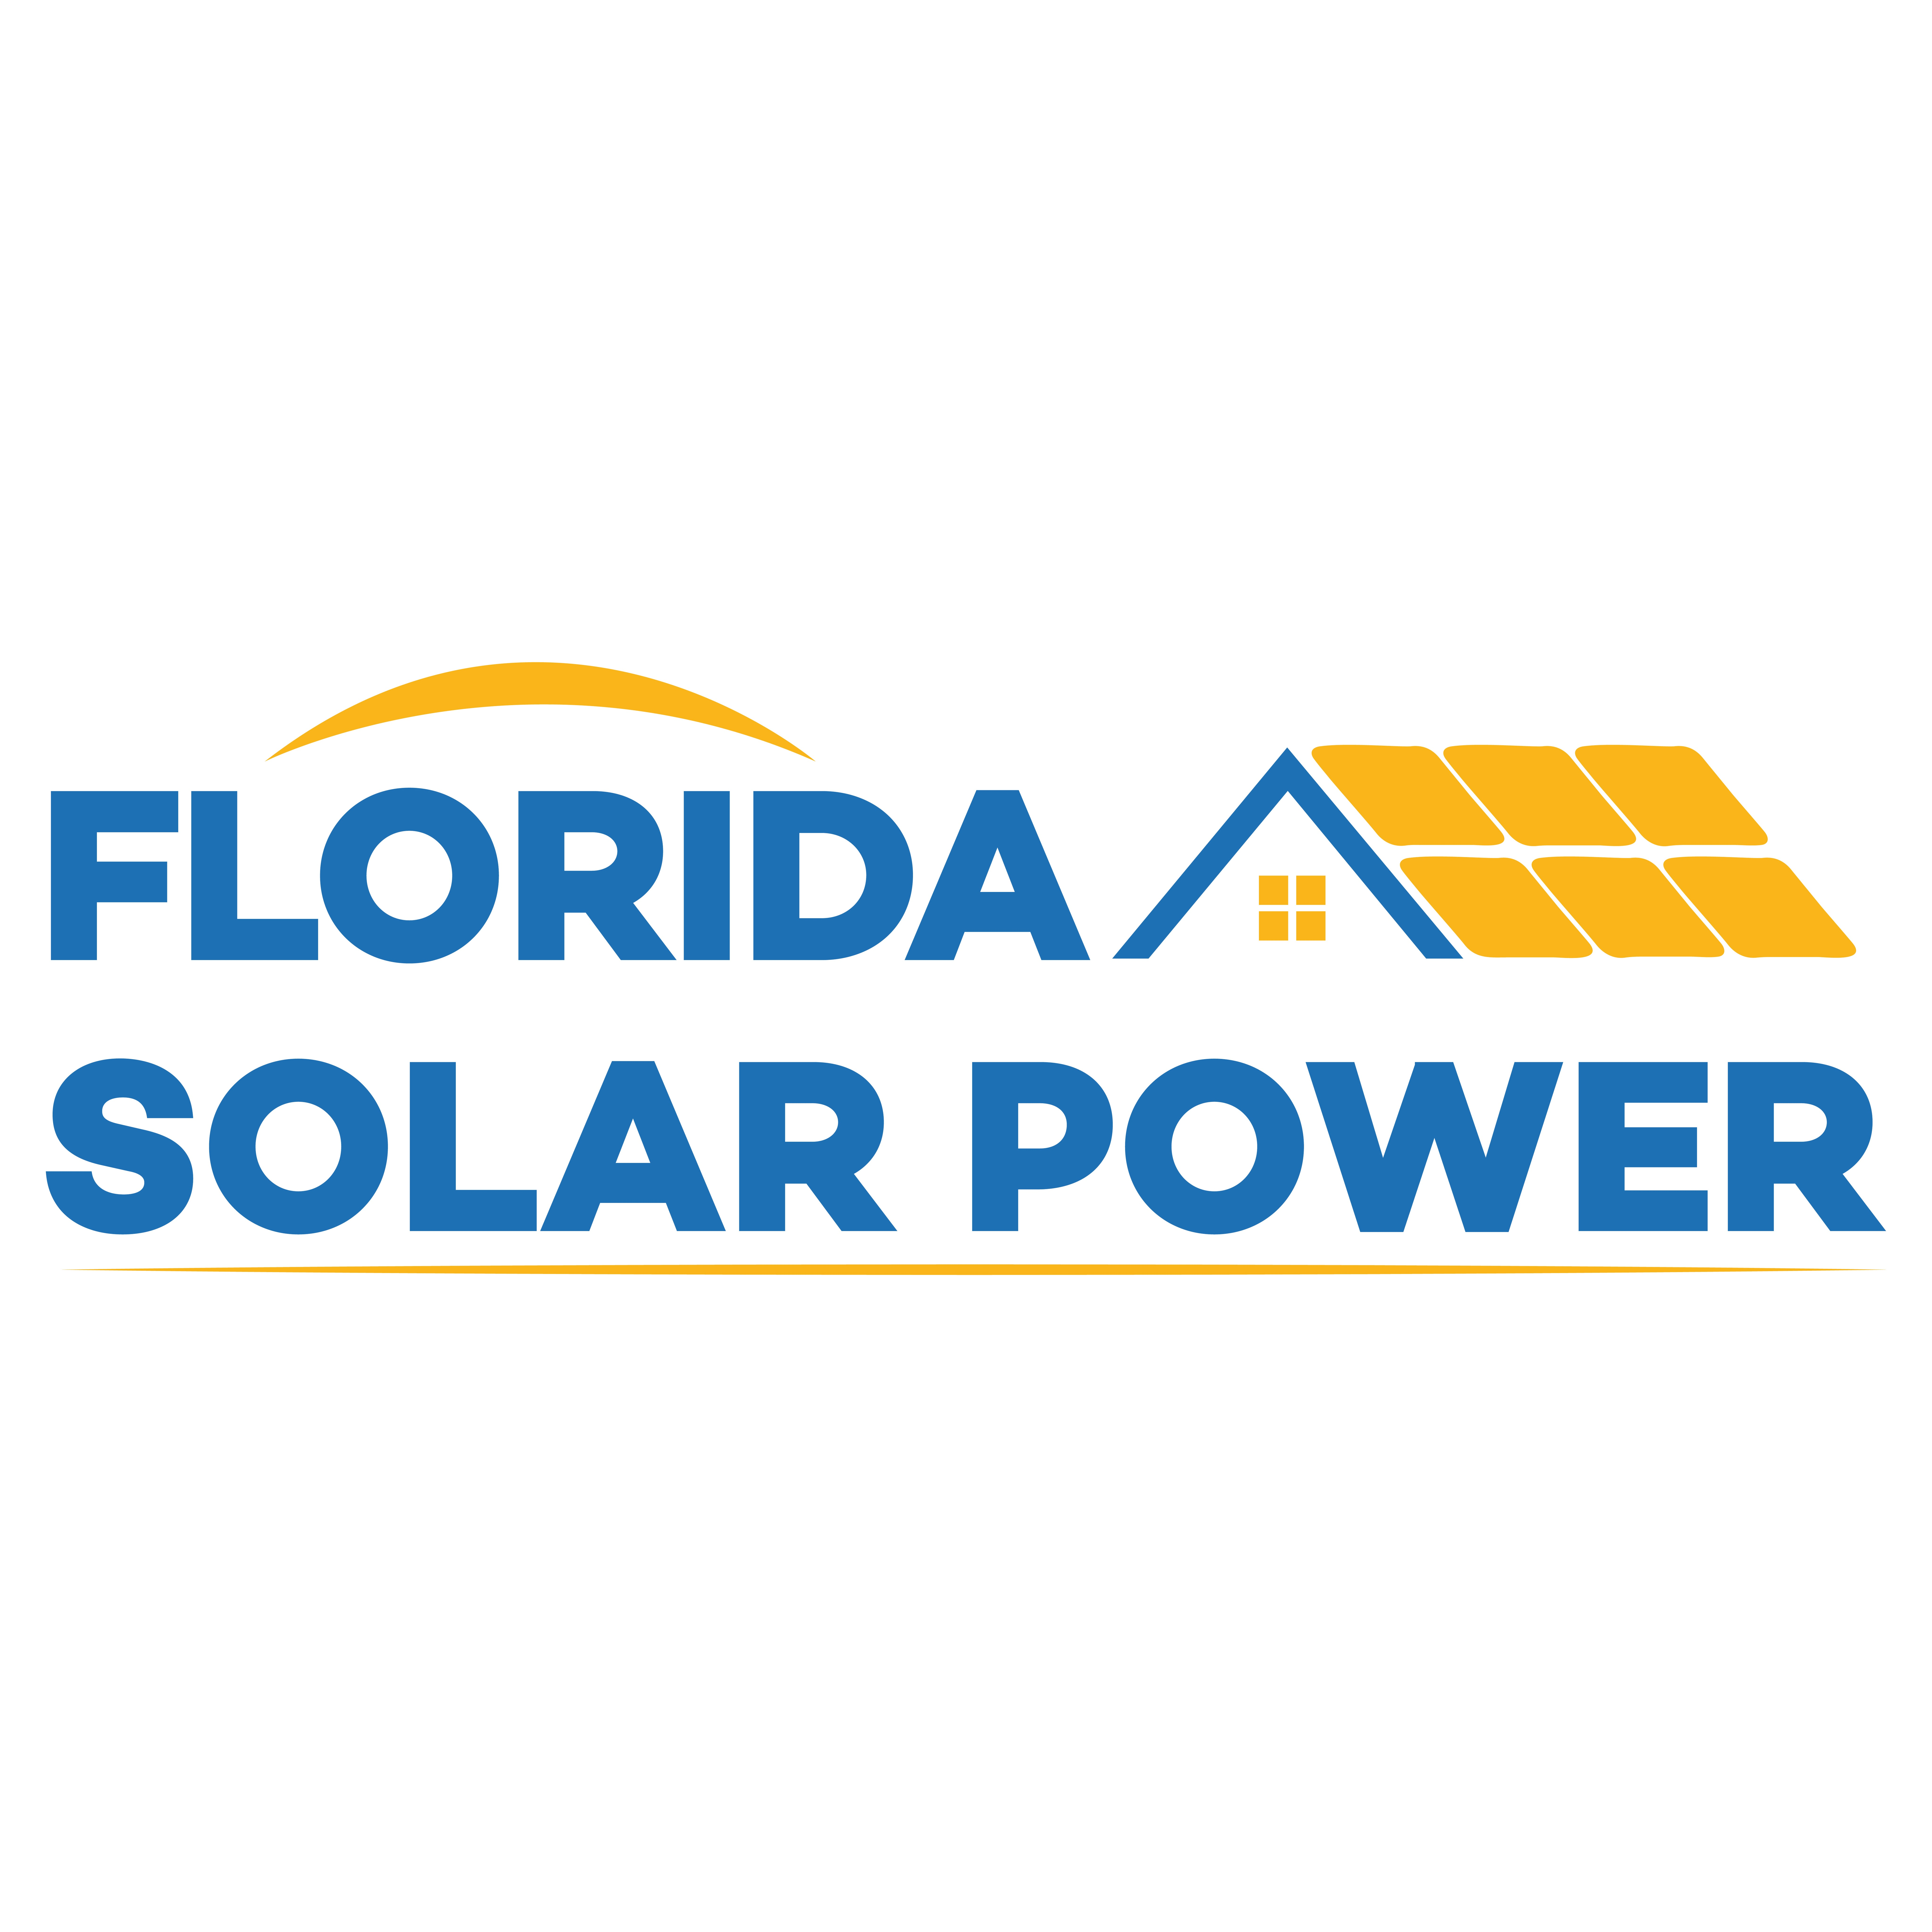 Florida Solar Power logo